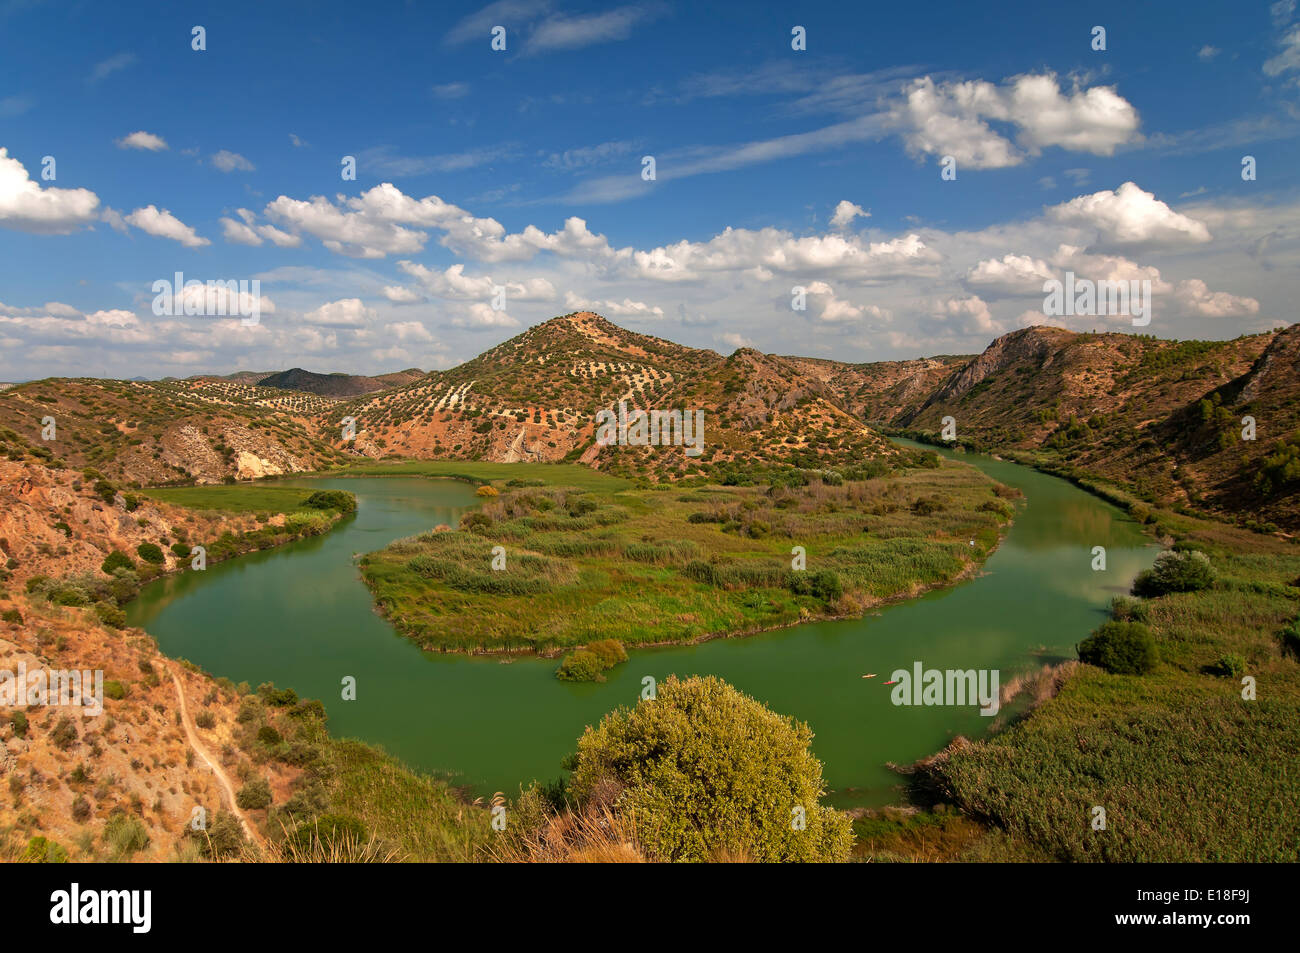 Schlendern Sie am Fluss Genil, Badolatosa, Sevilla Provinz, Region von Andalusien, Spanien, Europa Stockfoto